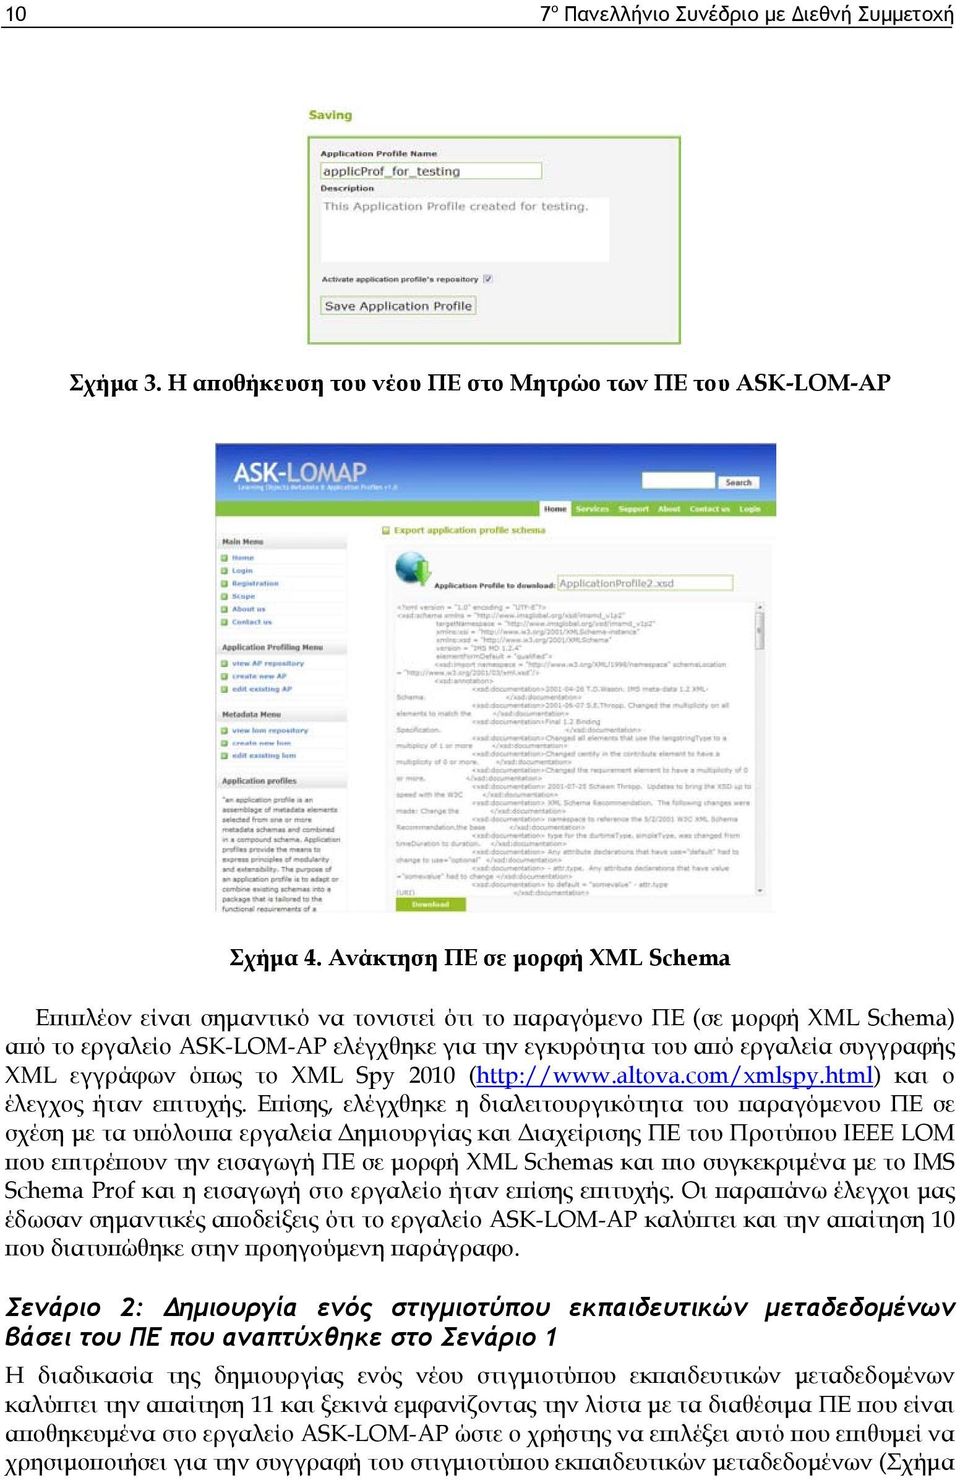 εγγράφων όπως το XML Spy 2010 (http://www.altova.com/xmlspy.html) και ο έλεγχος ήταν επιτυχής.